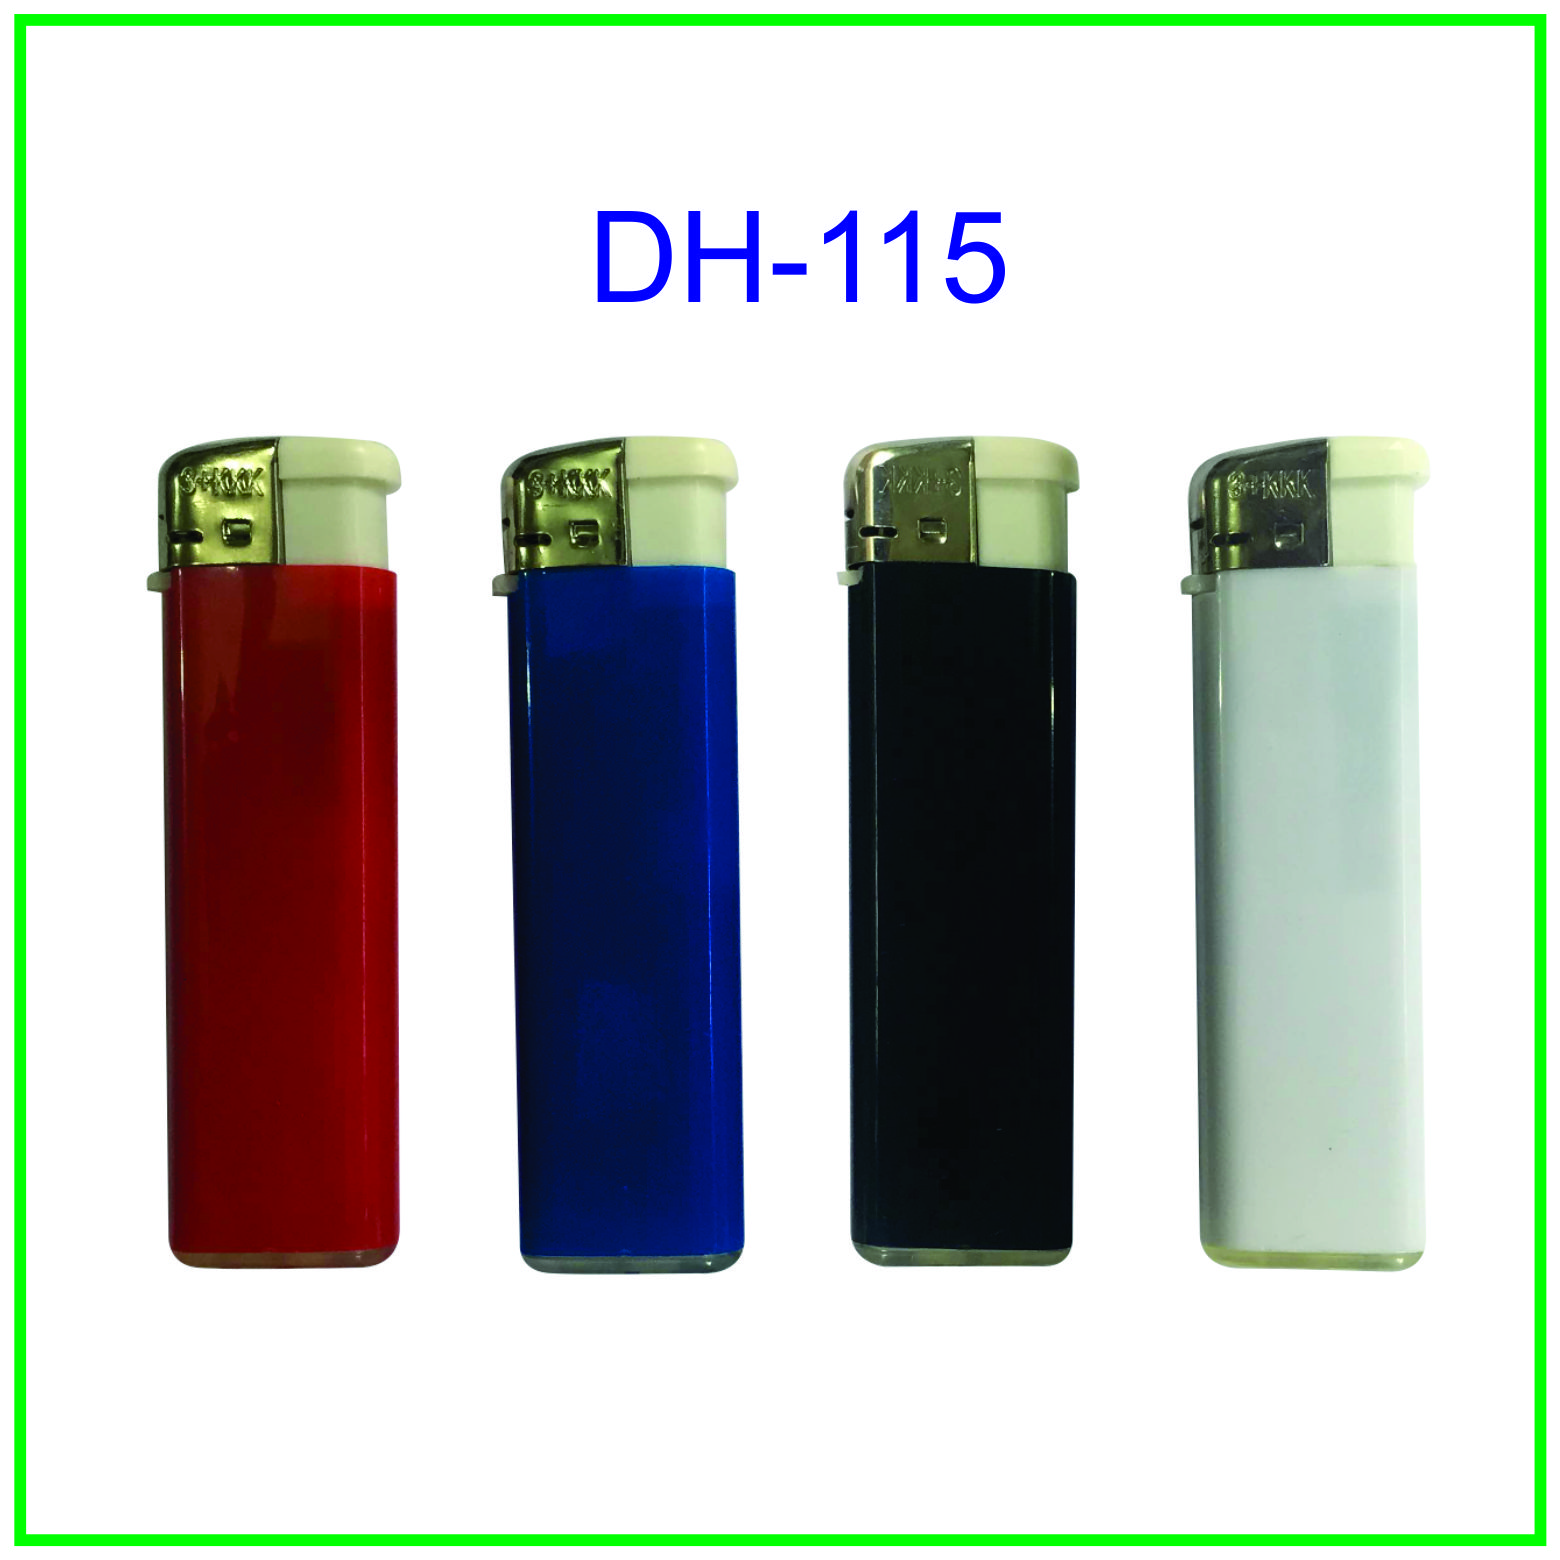 dh115